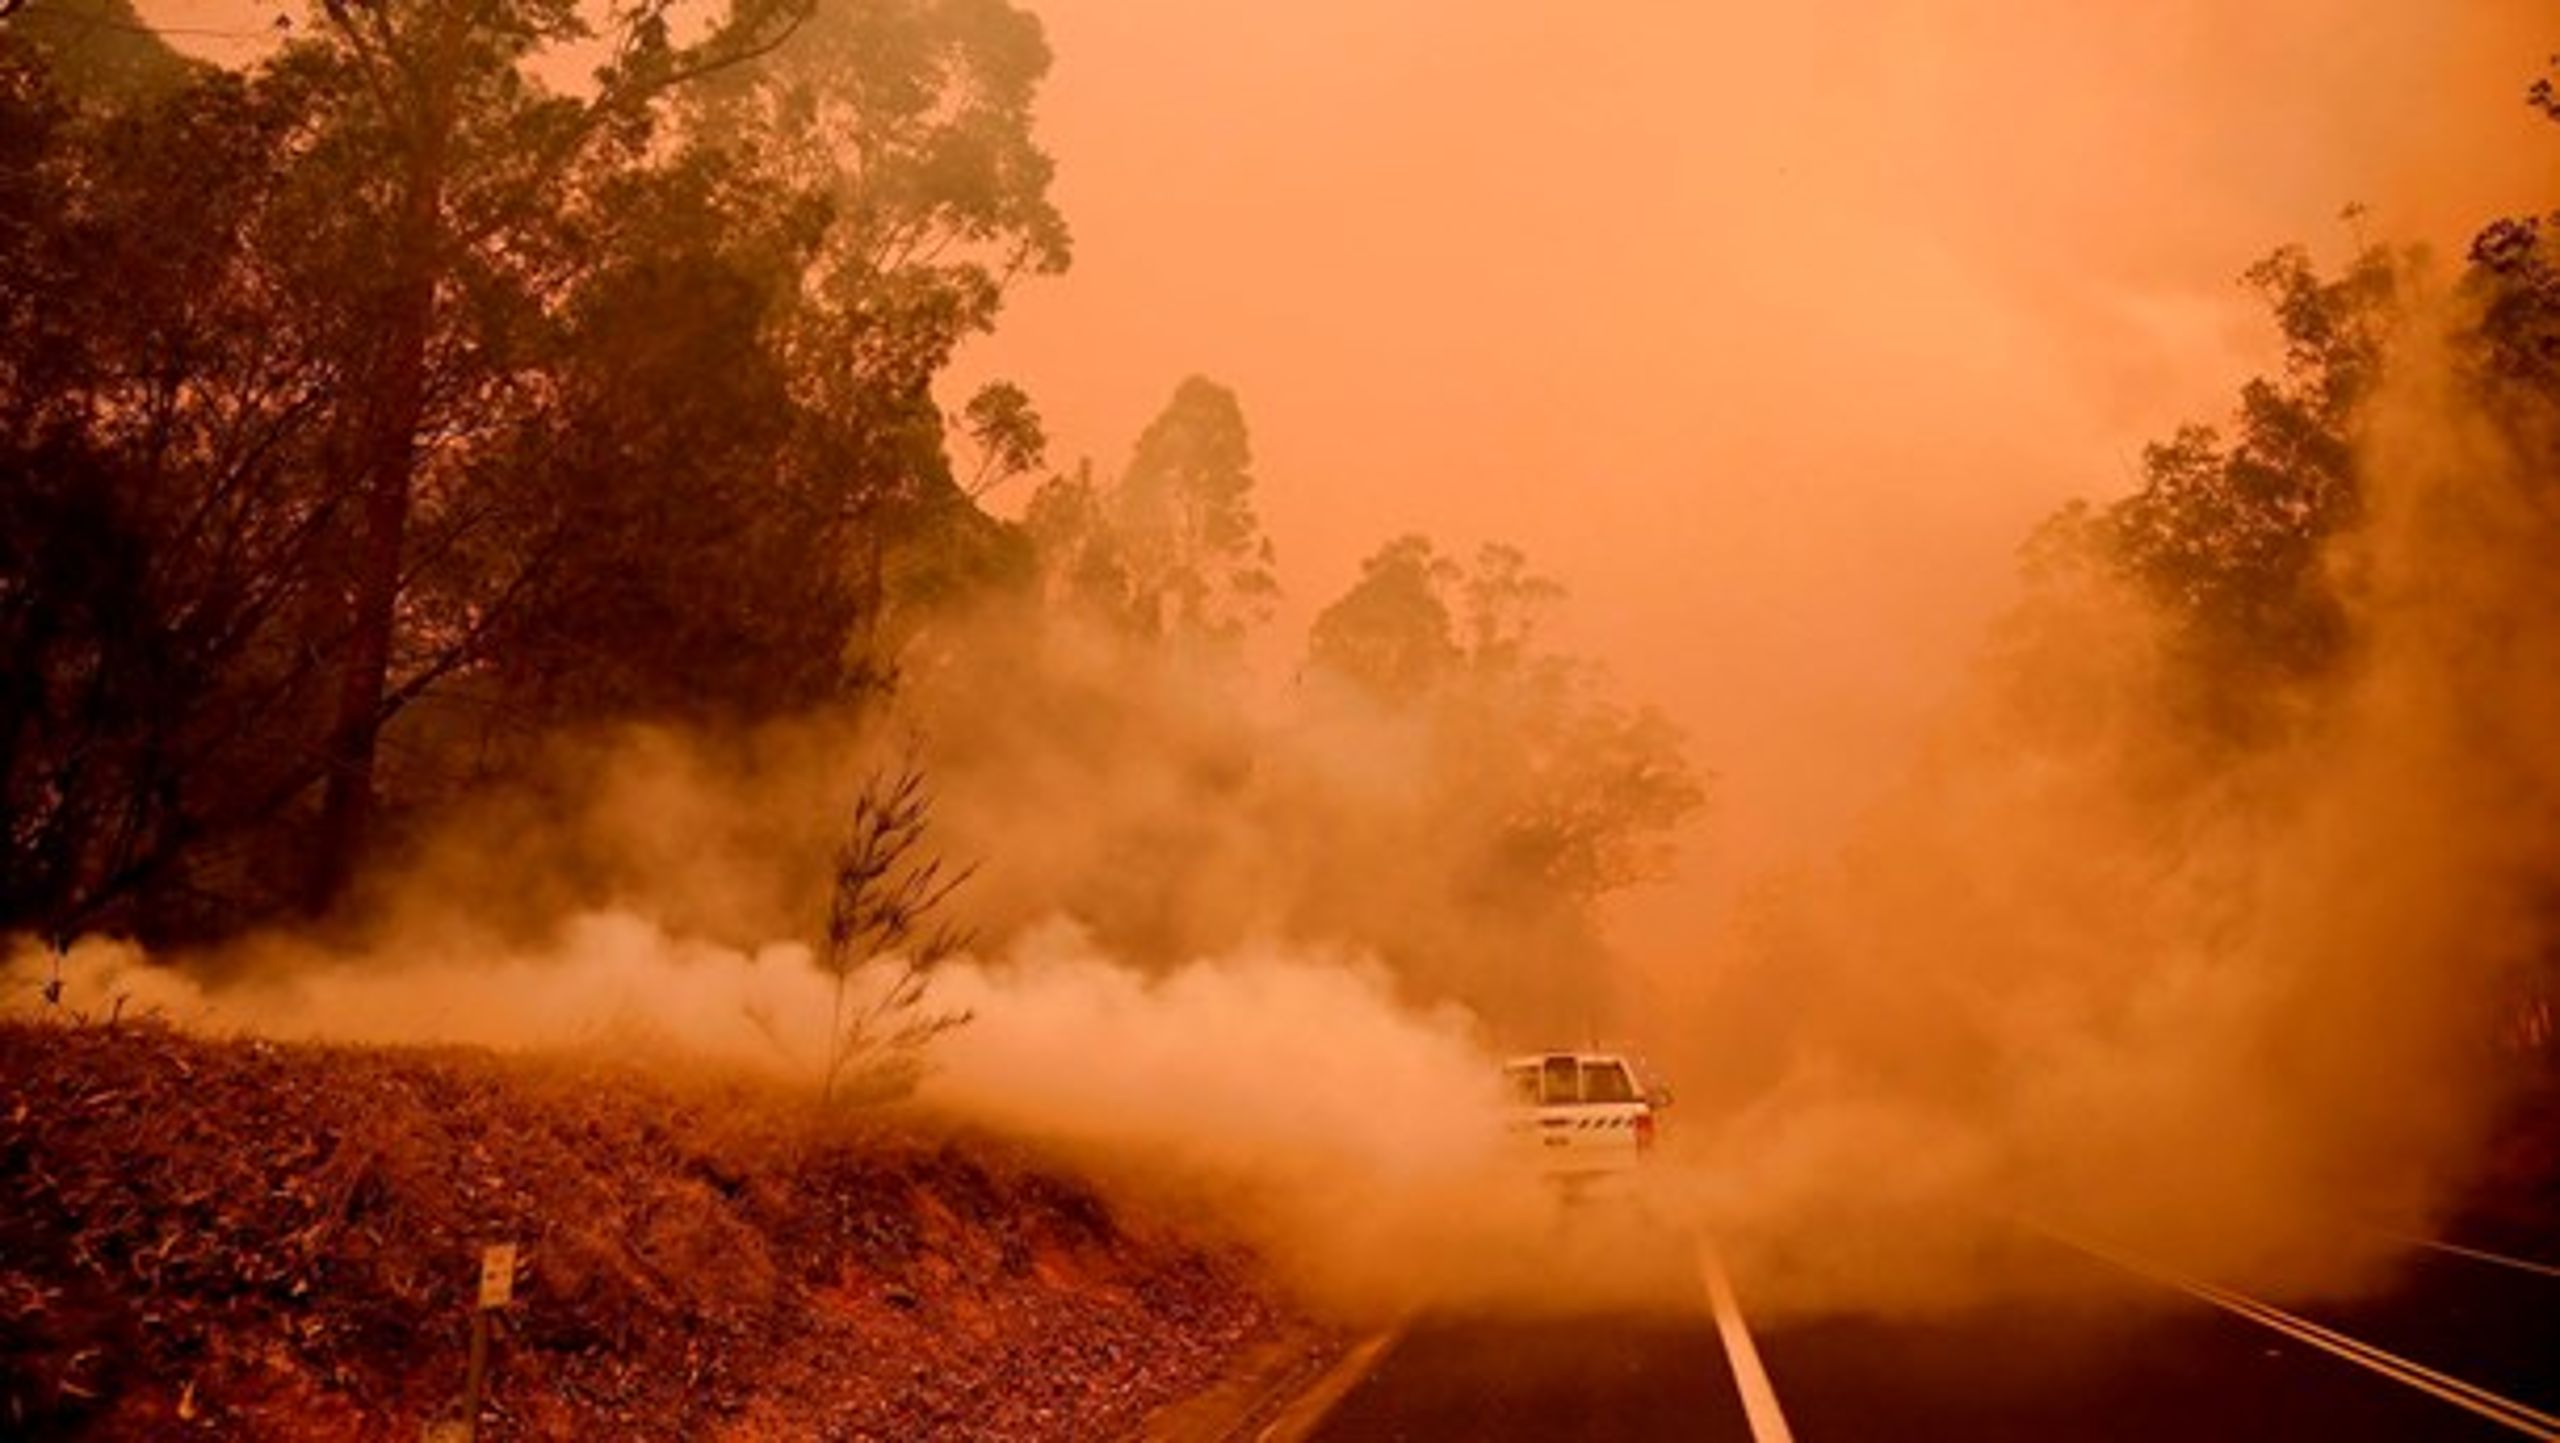 Året er kun lige begyndt, og nyhederne er allerede fulde af klimarelaterede historier, skriver Mattias Söderberg. Her er et billede fra Australien, hvor der er alvorlige skovbrande.